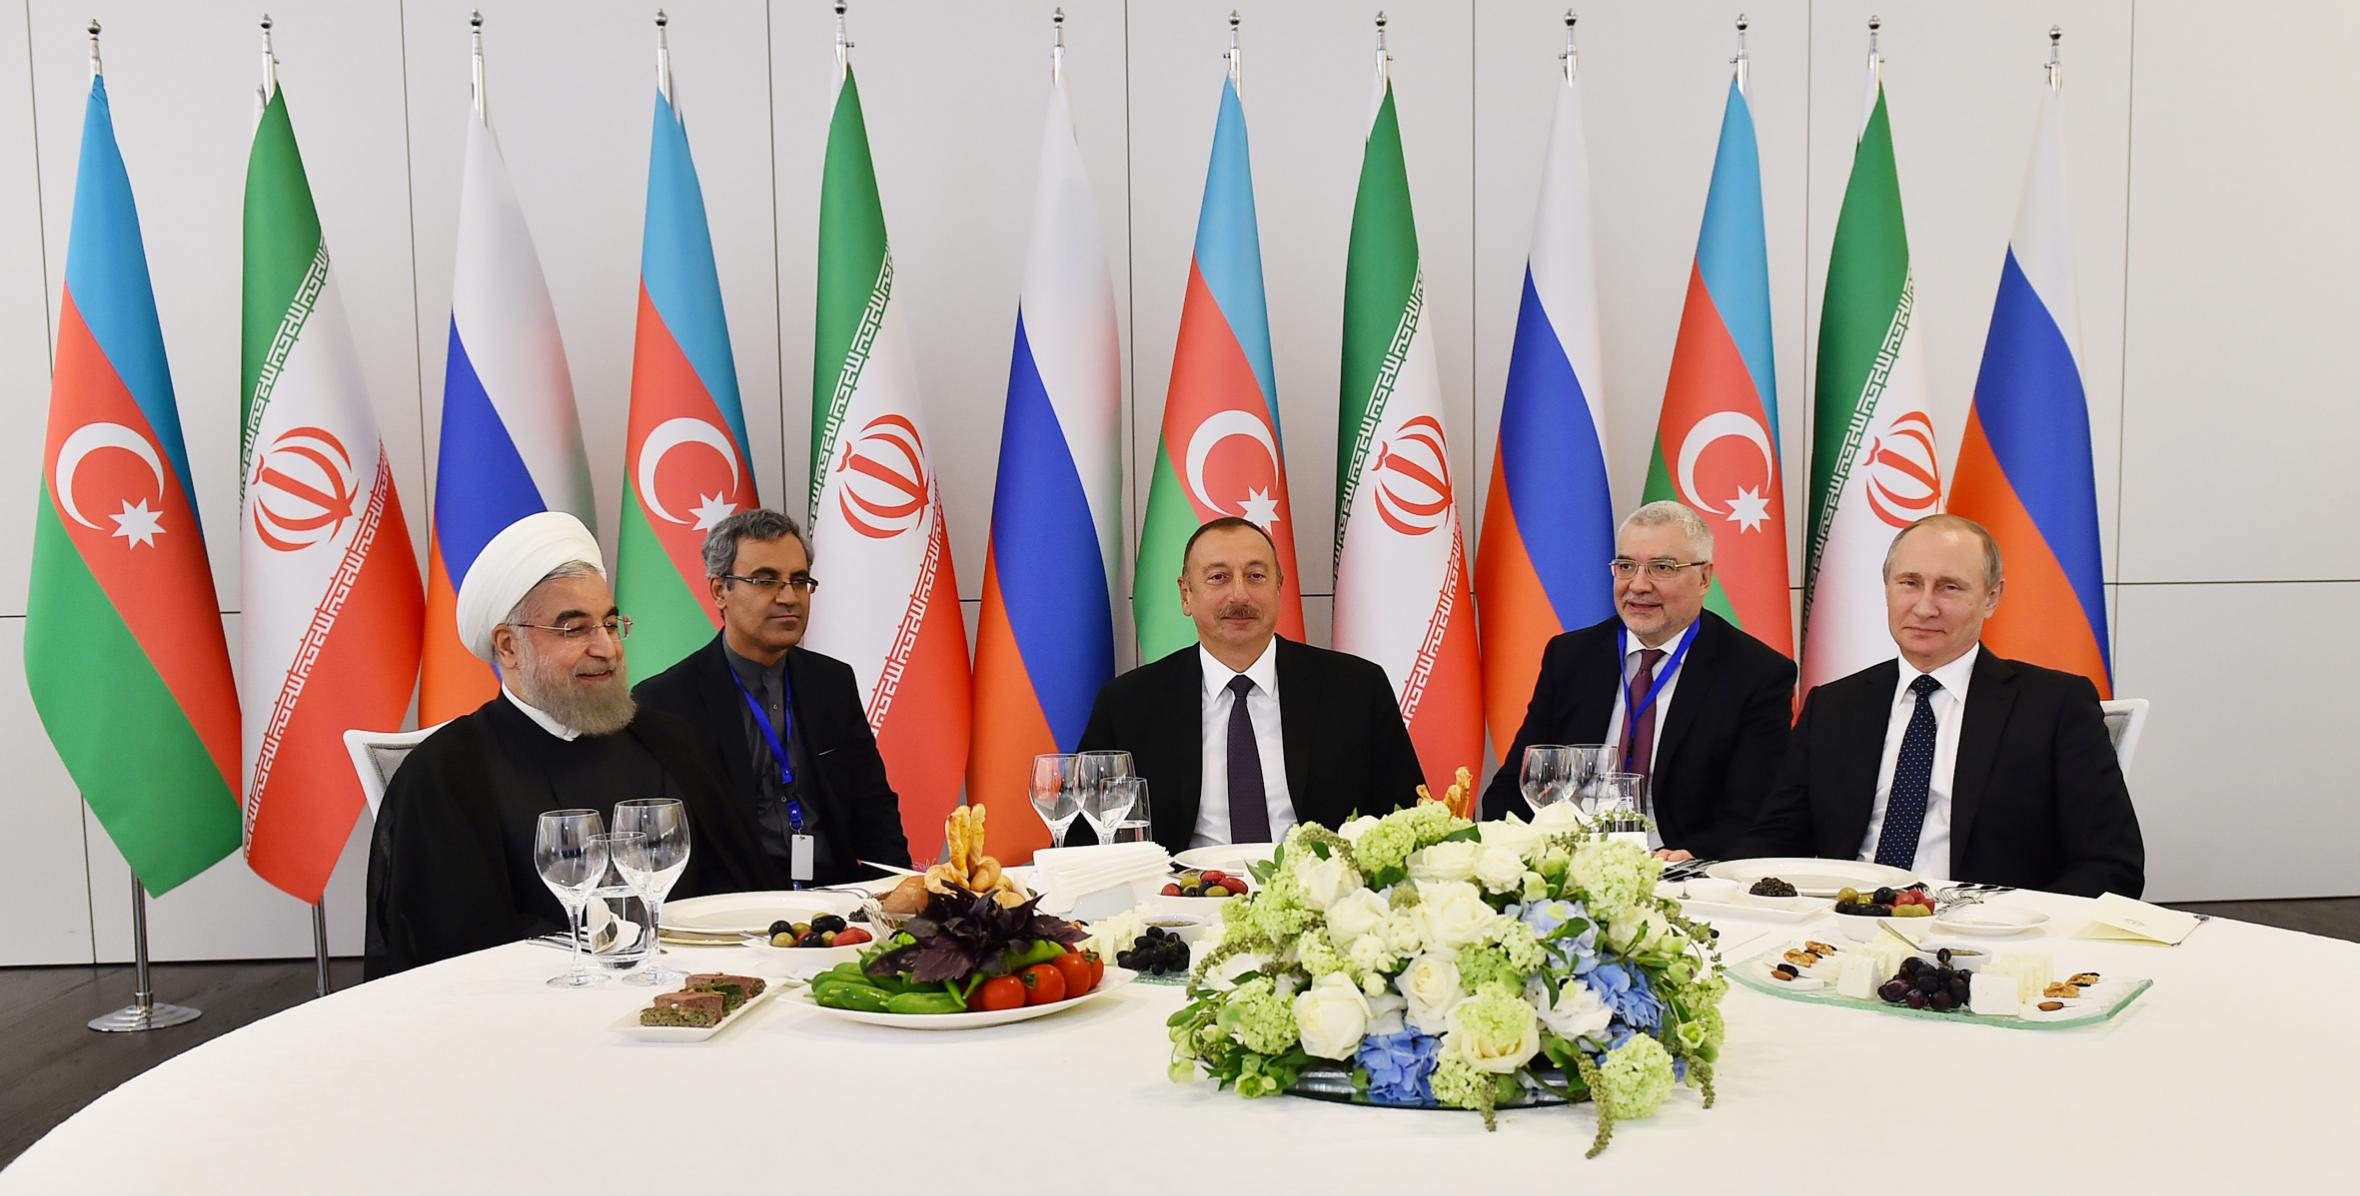 От имени Ильхама Алиева был устроен прием в честь Президента Исламской Республики Иран Хасана Роухани и Президента Российской Федерации Владимира Путина